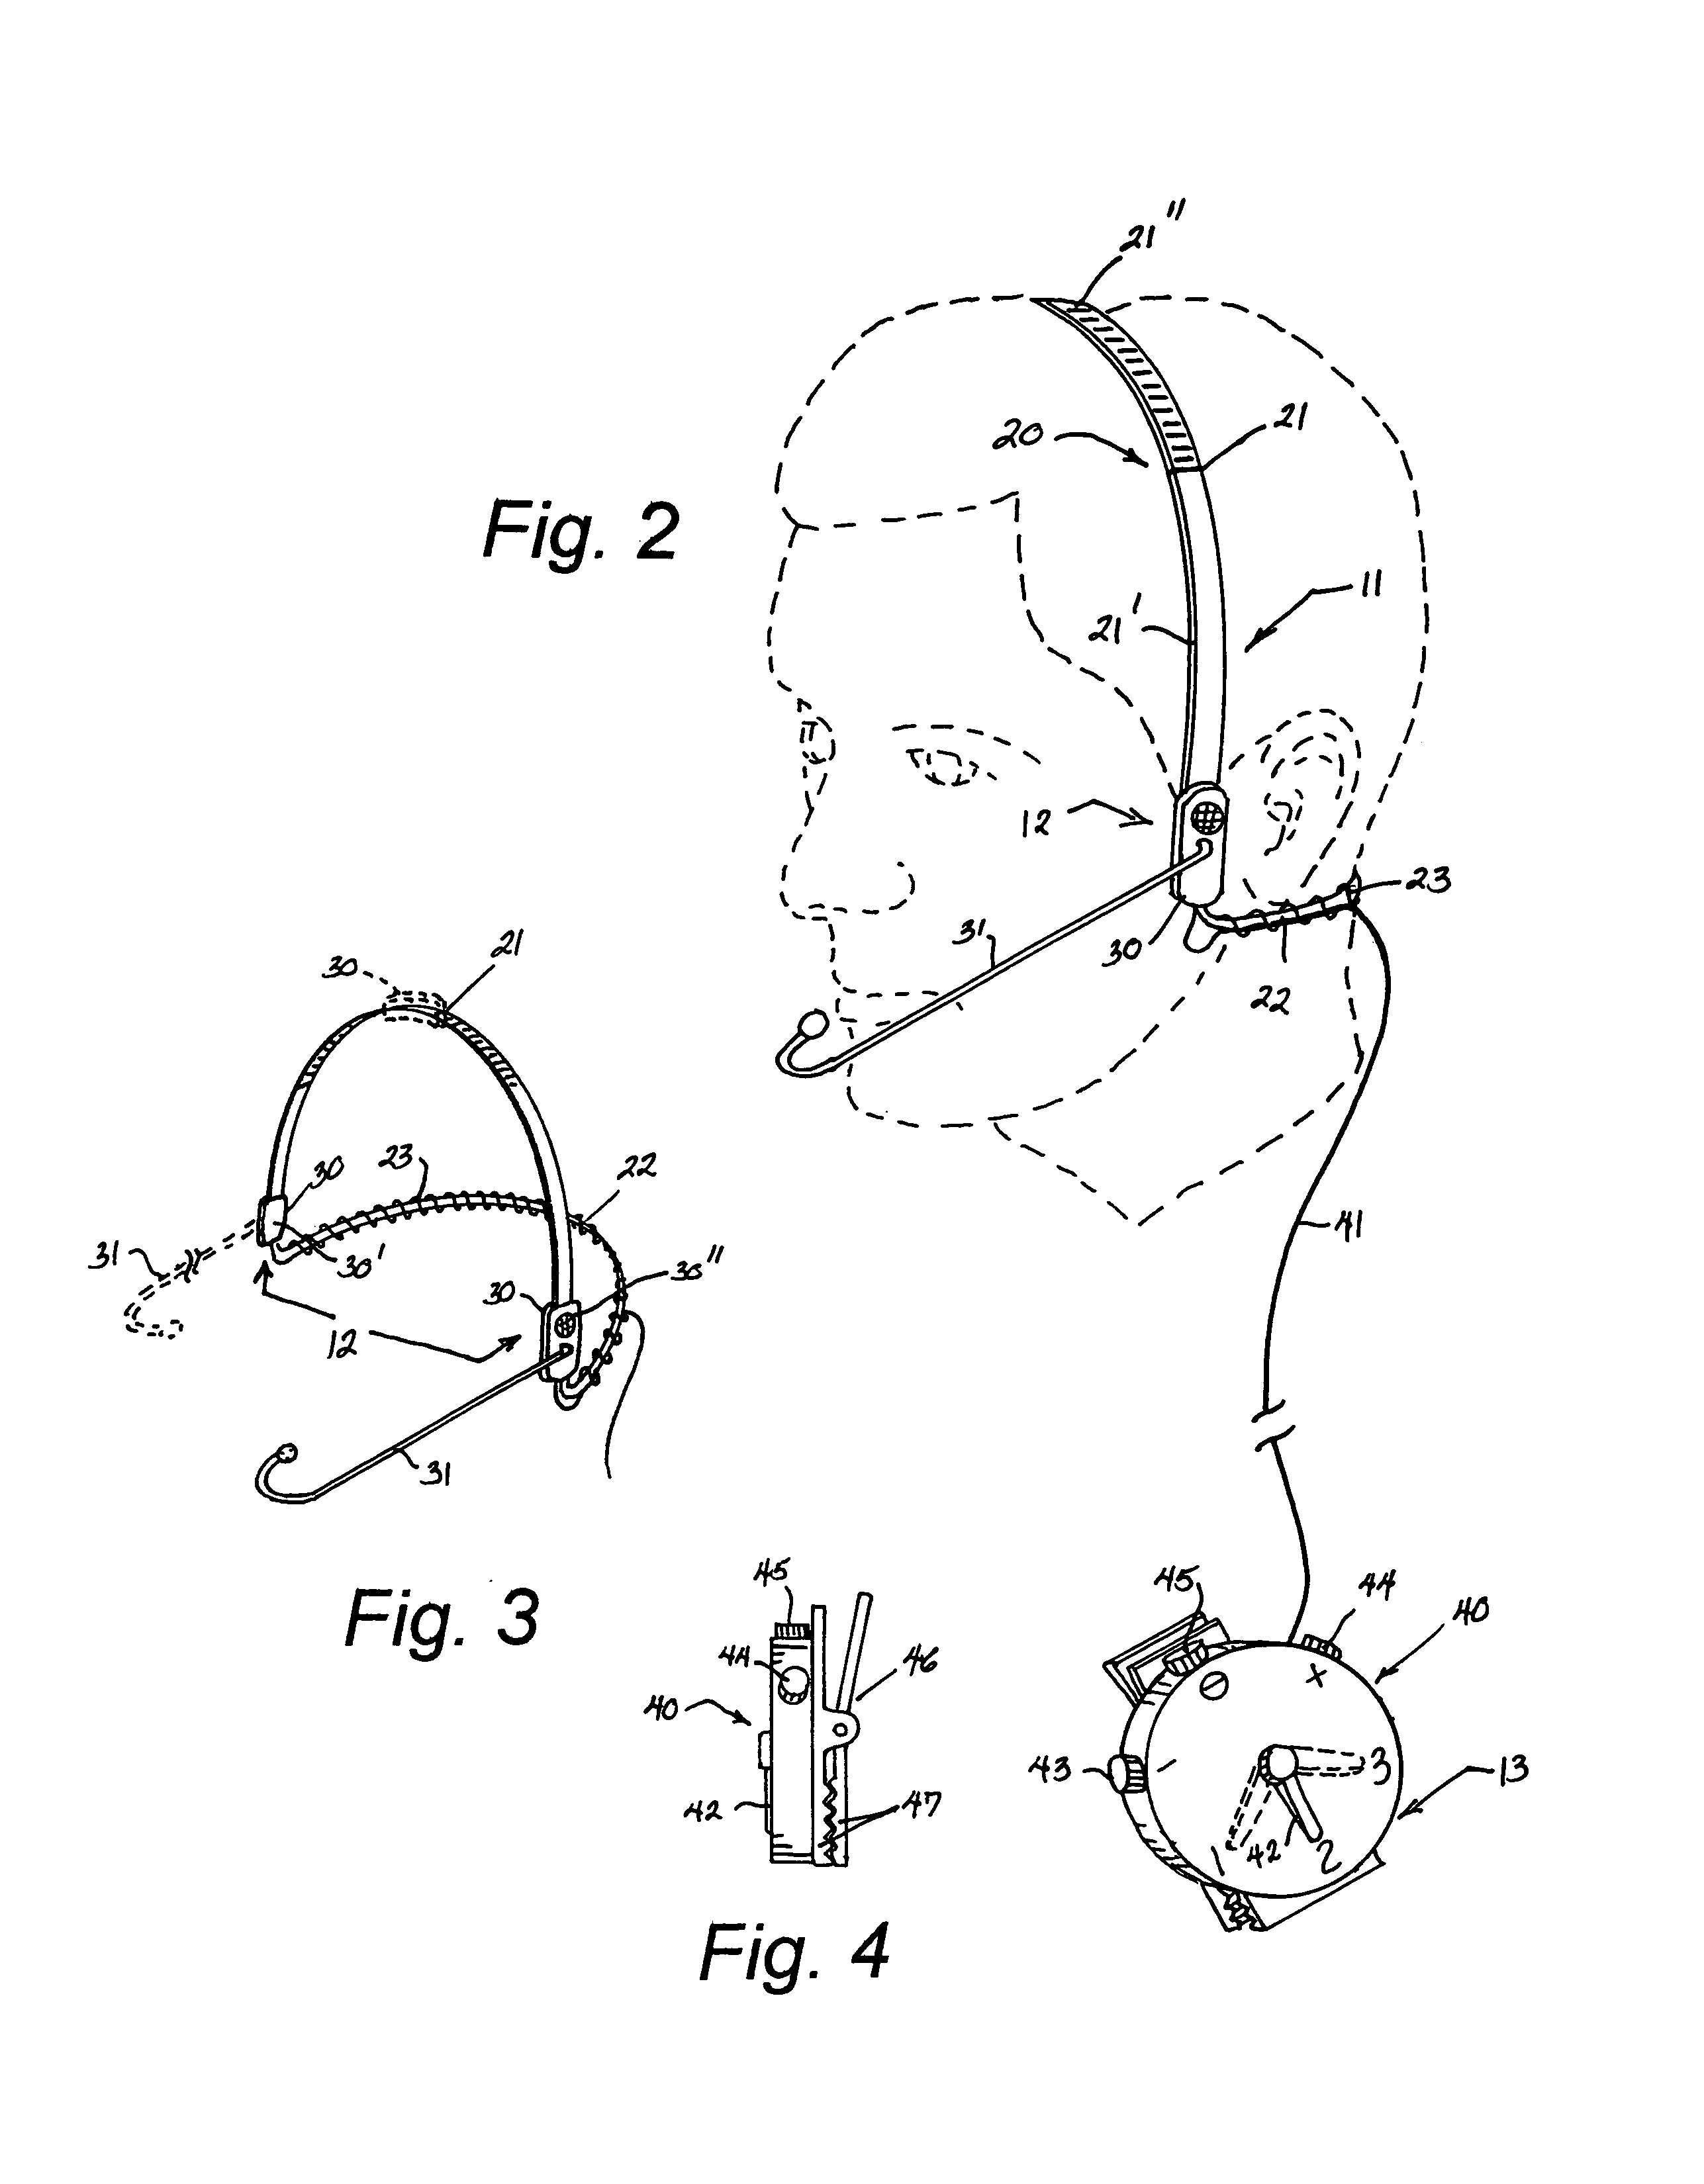 Bone conducting headset apparatus